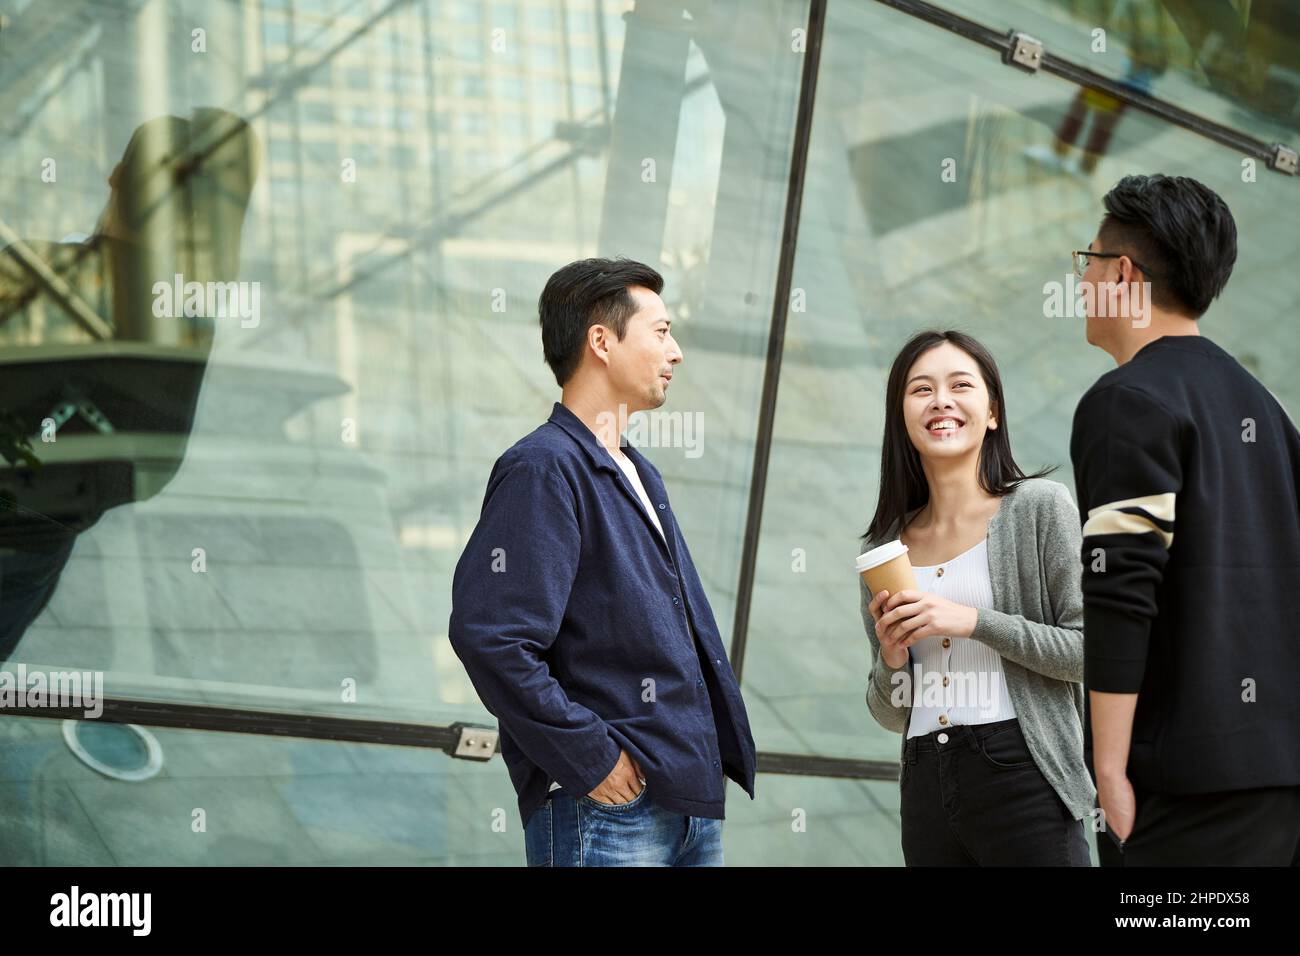 Drei junge asiatische Menschen stehen und unterhalten sich glücklich und lächelnd auf der Straße Stockfoto